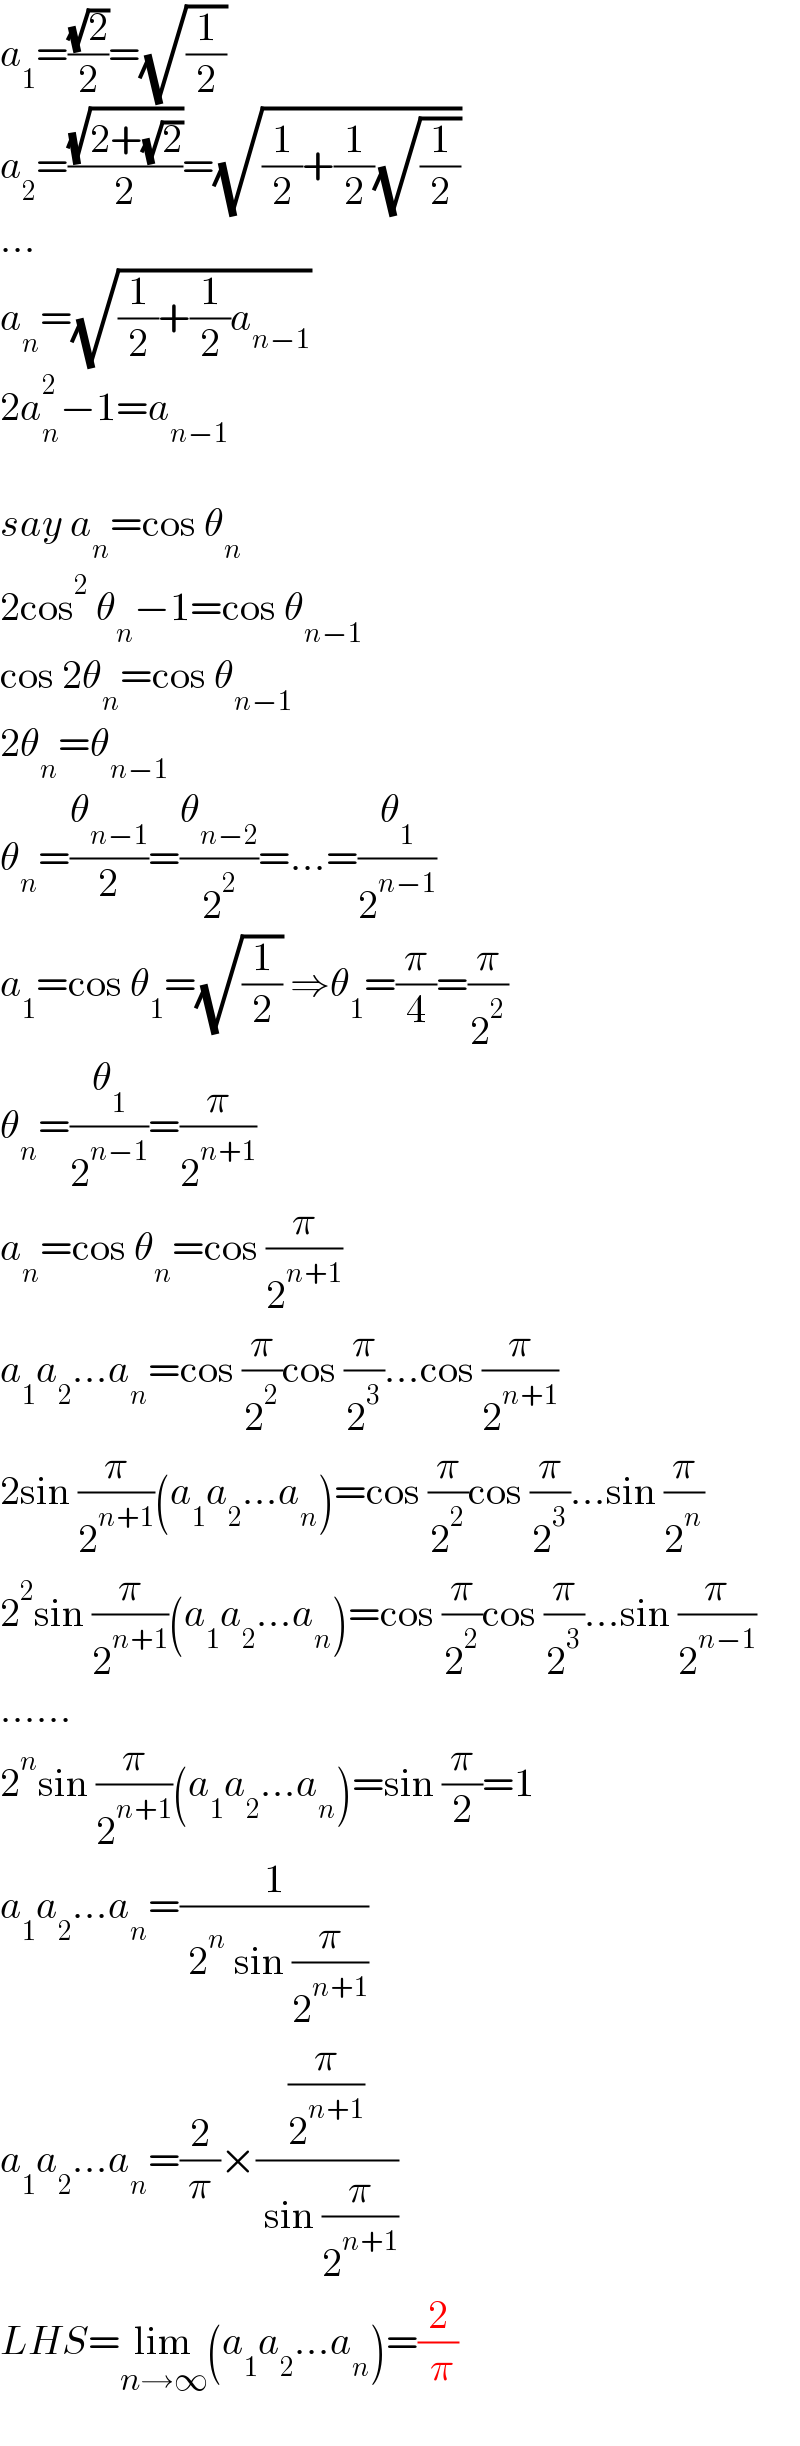 a_1 =((√2)/2)=(√(1/2))  a_2 =((√(2+(√2)))/2)=(√((1/2)+(1/2)(√(1/2))))  ...  a_n =(√((1/2)+(1/2)a_(n−1) ))  2a_n ^2 −1=a_(n−1)     say a_n =cos θ_n   2cos^2  θ_n −1=cos θ_(n−1)   cos 2θ_n =cos θ_(n−1)   2θ_n =θ_(n−1)   θ_n =(θ_(n−1) /2)=(θ_(n−2) /2^2 )=...=(θ_1 /2^(n−1) )  a_1 =cos θ_1 =(√(1/2)) ⇒θ_1 =(π/4)=(π/2^2 )  θ_n =(θ_1 /2^(n−1) )=(π/2^(n+1) )  a_n =cos θ_n =cos (π/2^(n+1) )  a_1 a_2 ...a_n =cos (π/2^2 )cos (π/2^3 )...cos (π/2^(n+1) )  2sin (π/2^(n+1) )(a_1 a_2 ...a_n )=cos (π/2^2 )cos (π/2^3 )...sin (π/2^n )  2^2 sin (π/2^(n+1) )(a_1 a_2 ...a_n )=cos (π/2^2 )cos (π/2^3 )...sin (π/2^(n−1) )  ......  2^n sin (π/2^(n+1) )(a_1 a_2 ...a_n )=sin (π/2)=1  a_1 a_2 ...a_n =(1/( 2^n  sin (π/2^(n+1) )))  a_1 a_2 ...a_n =(2/π)×((π/2^(n+1) )/( sin (π/2^(n+1) )))  LHS=lim_(n→∞) (a_1 a_2 ...a_n )=(2/( π))  